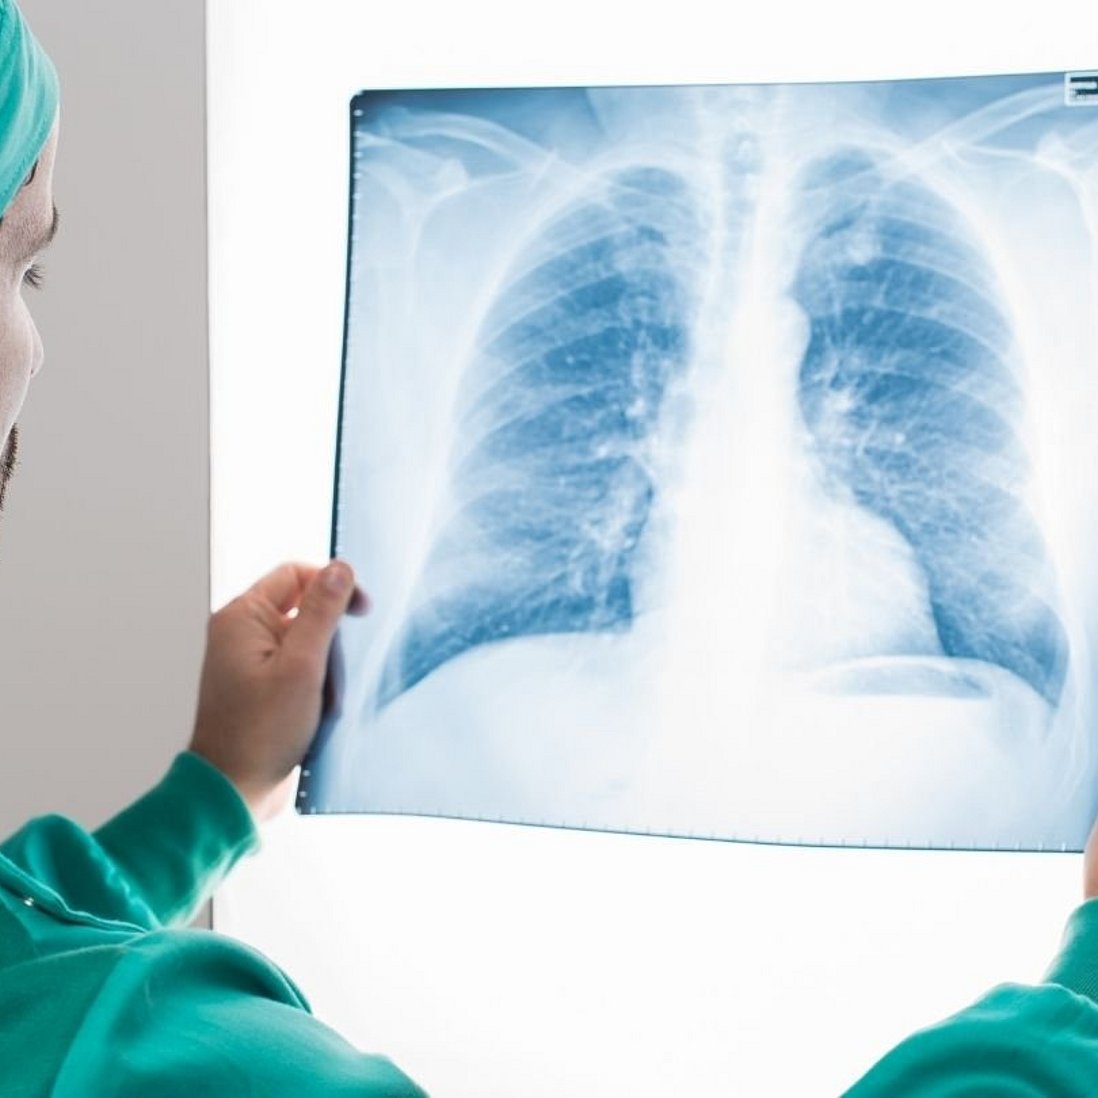 Arzt hält Röntgenaufnahme von Lunge